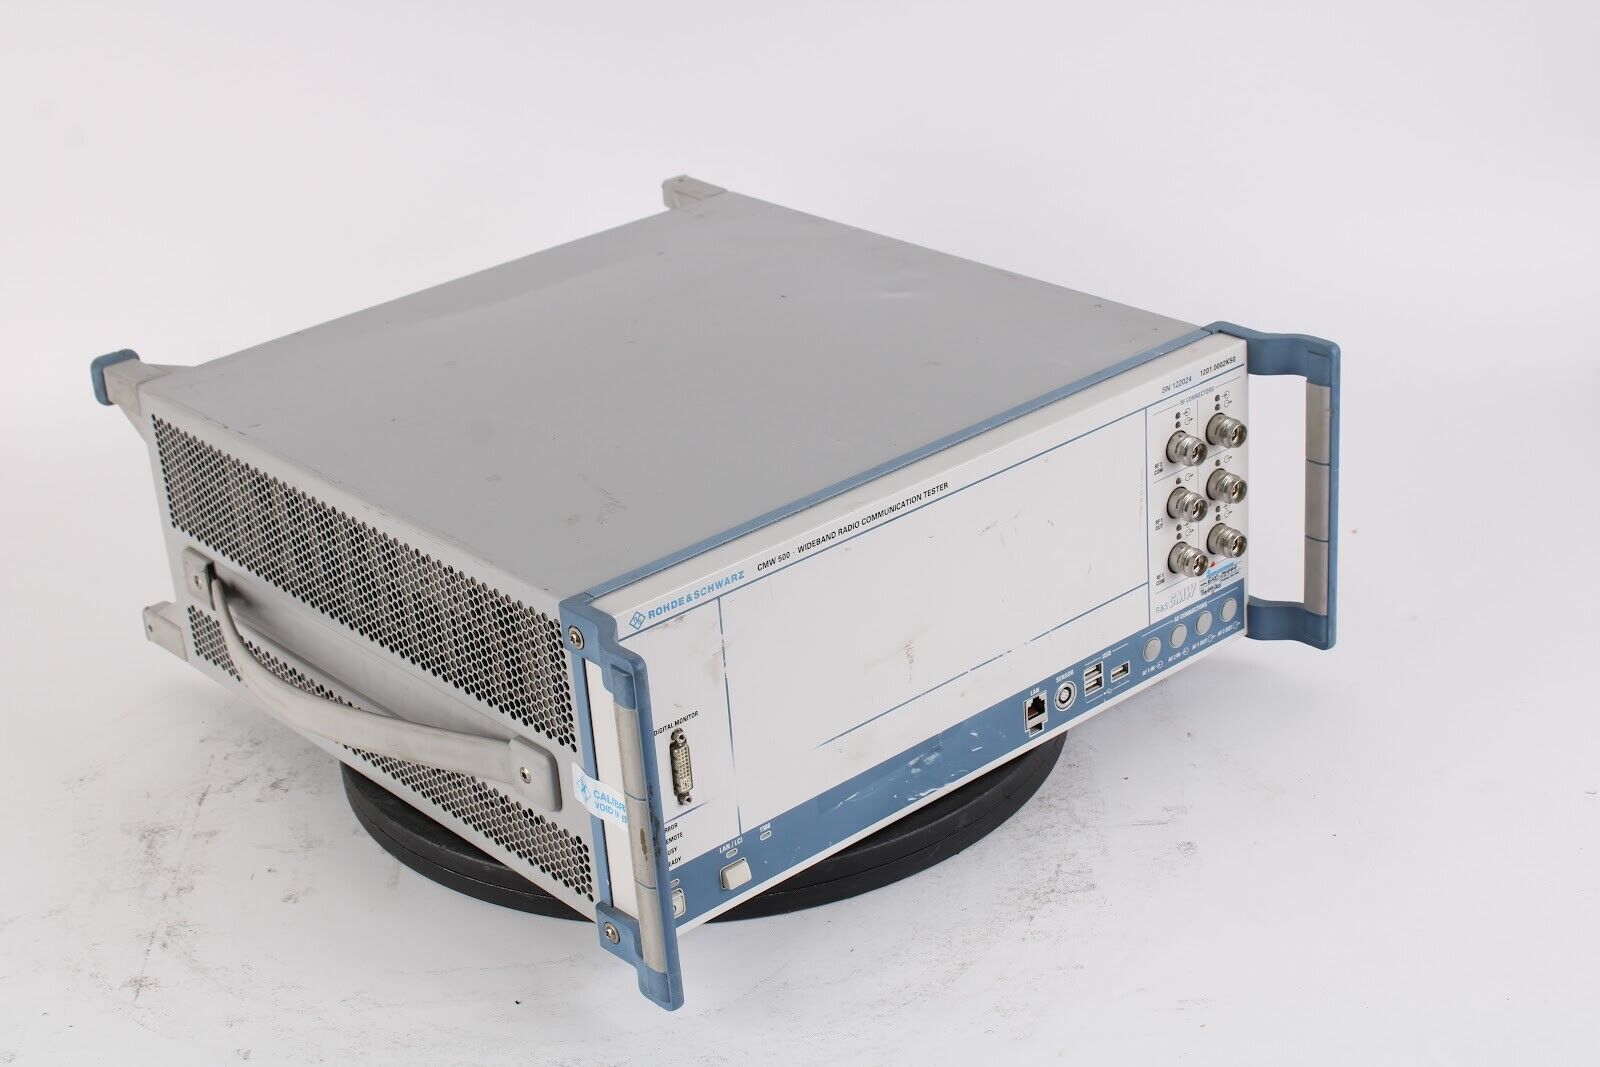 Rohde & Schwarz Cmw500 Wideband Radio Communication Tester W/ 19x Hw 26x Sw Opts